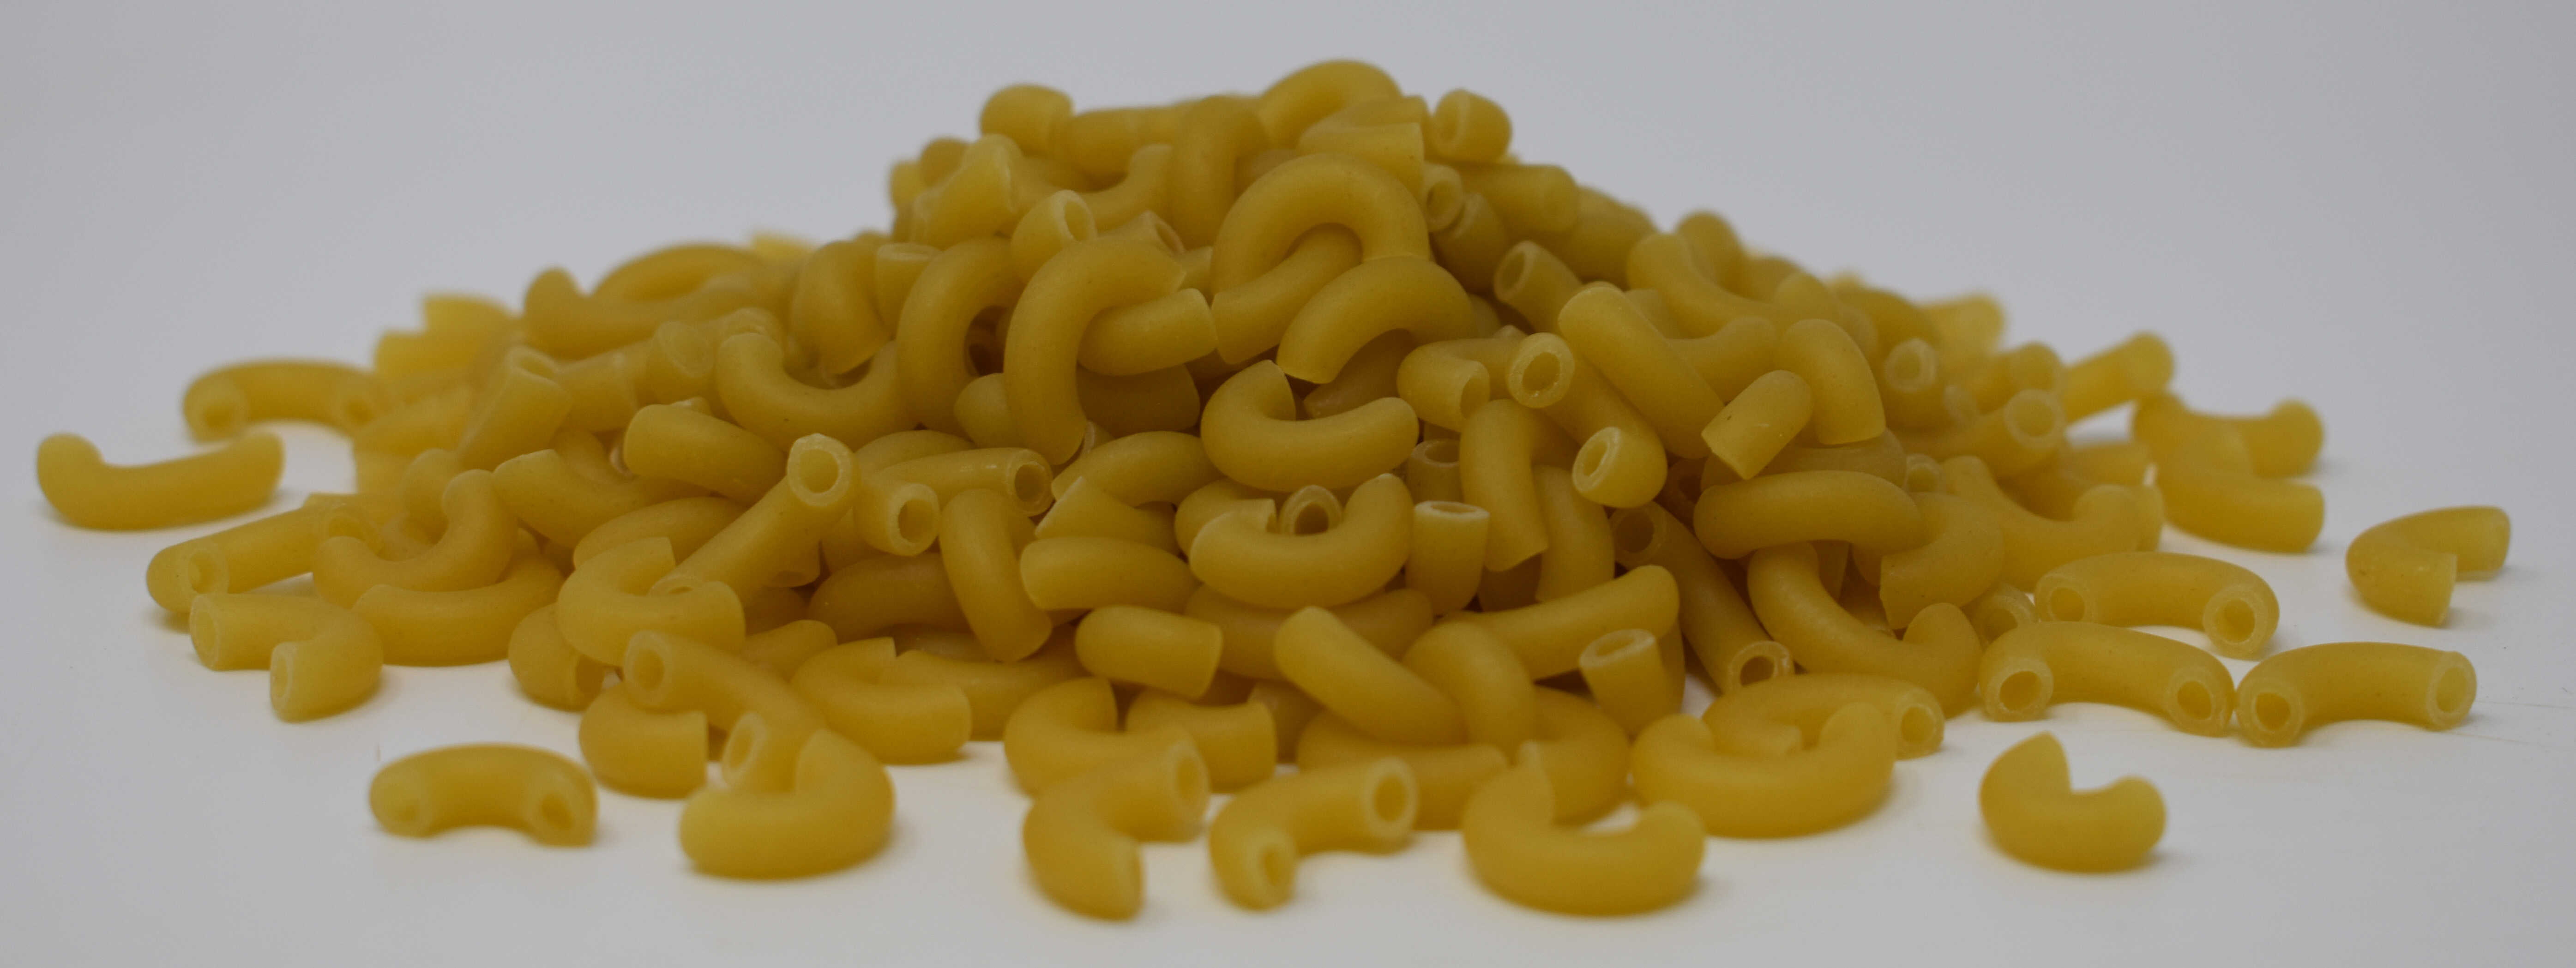 Elbow Macaroni Pasta - Side Photo